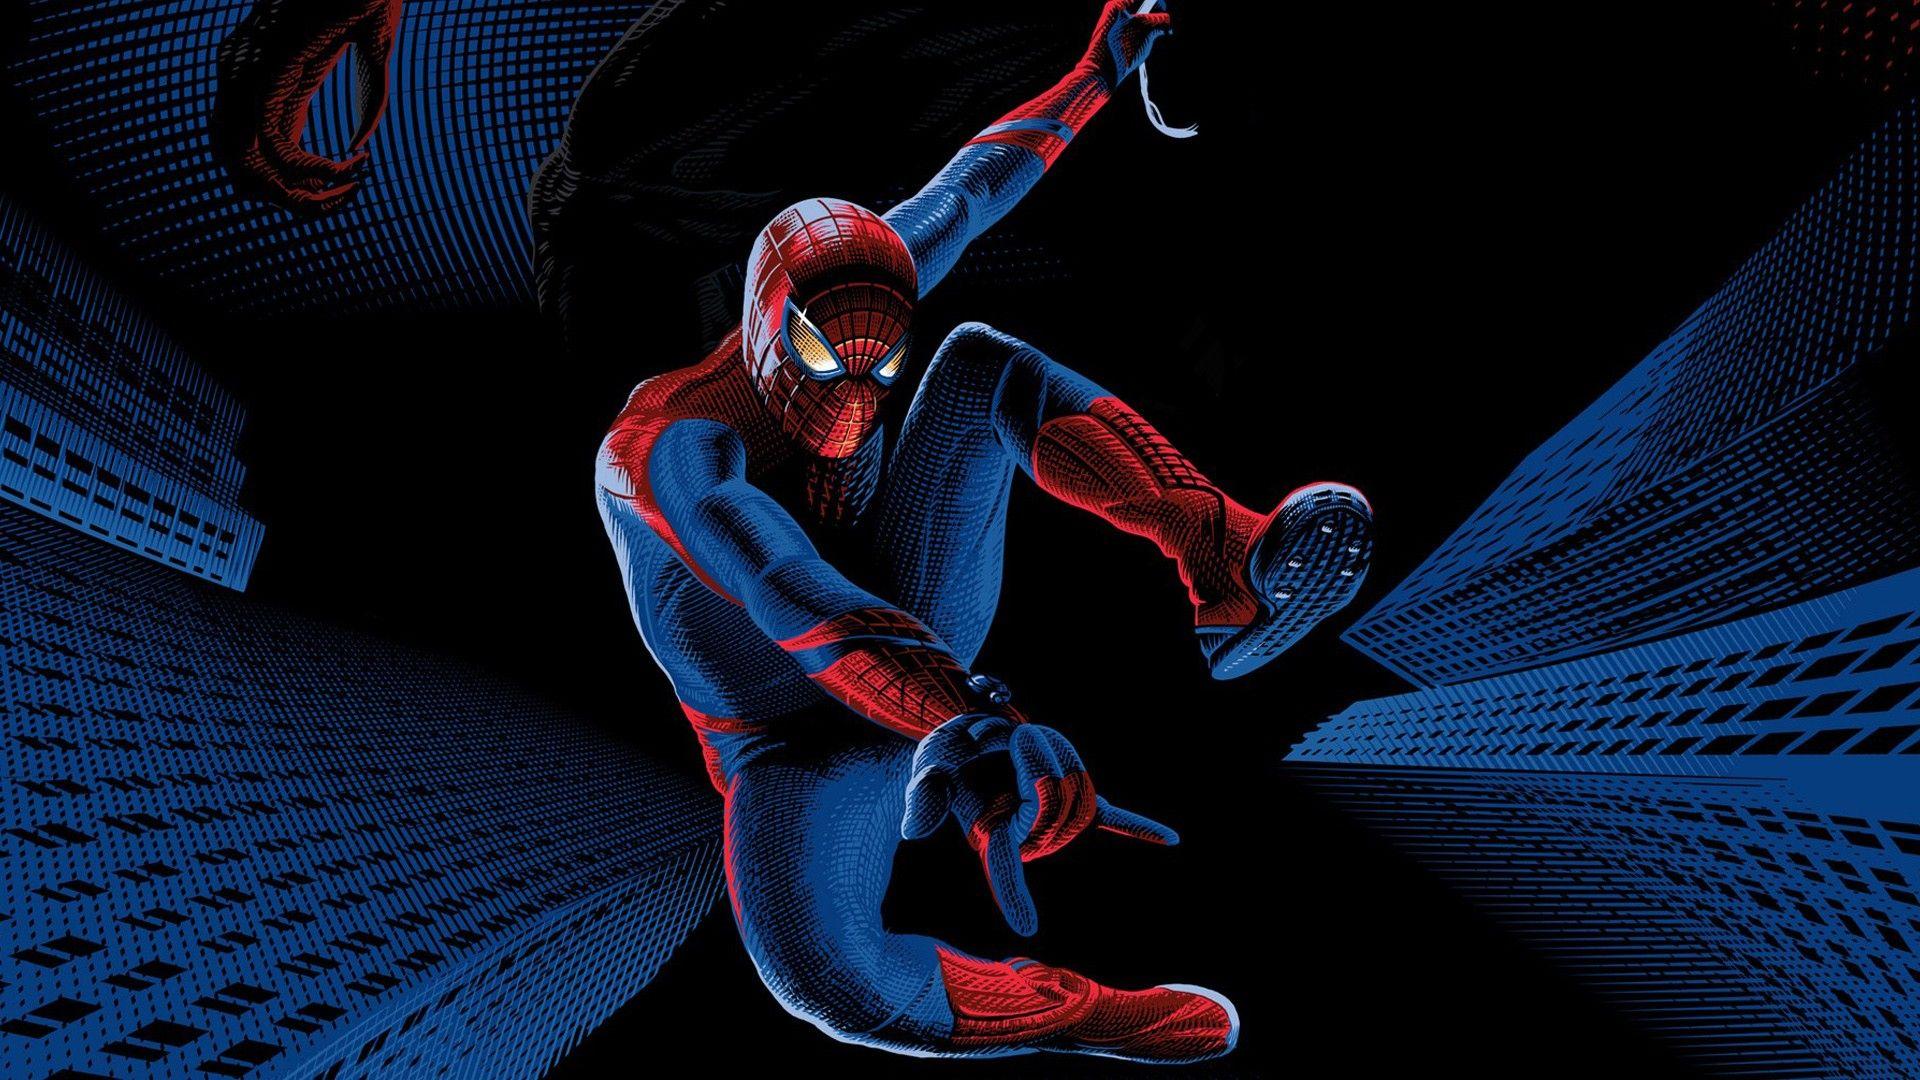 Spider Man Dark Wallpapers - Top Free Spider Man Dark Backgrounds